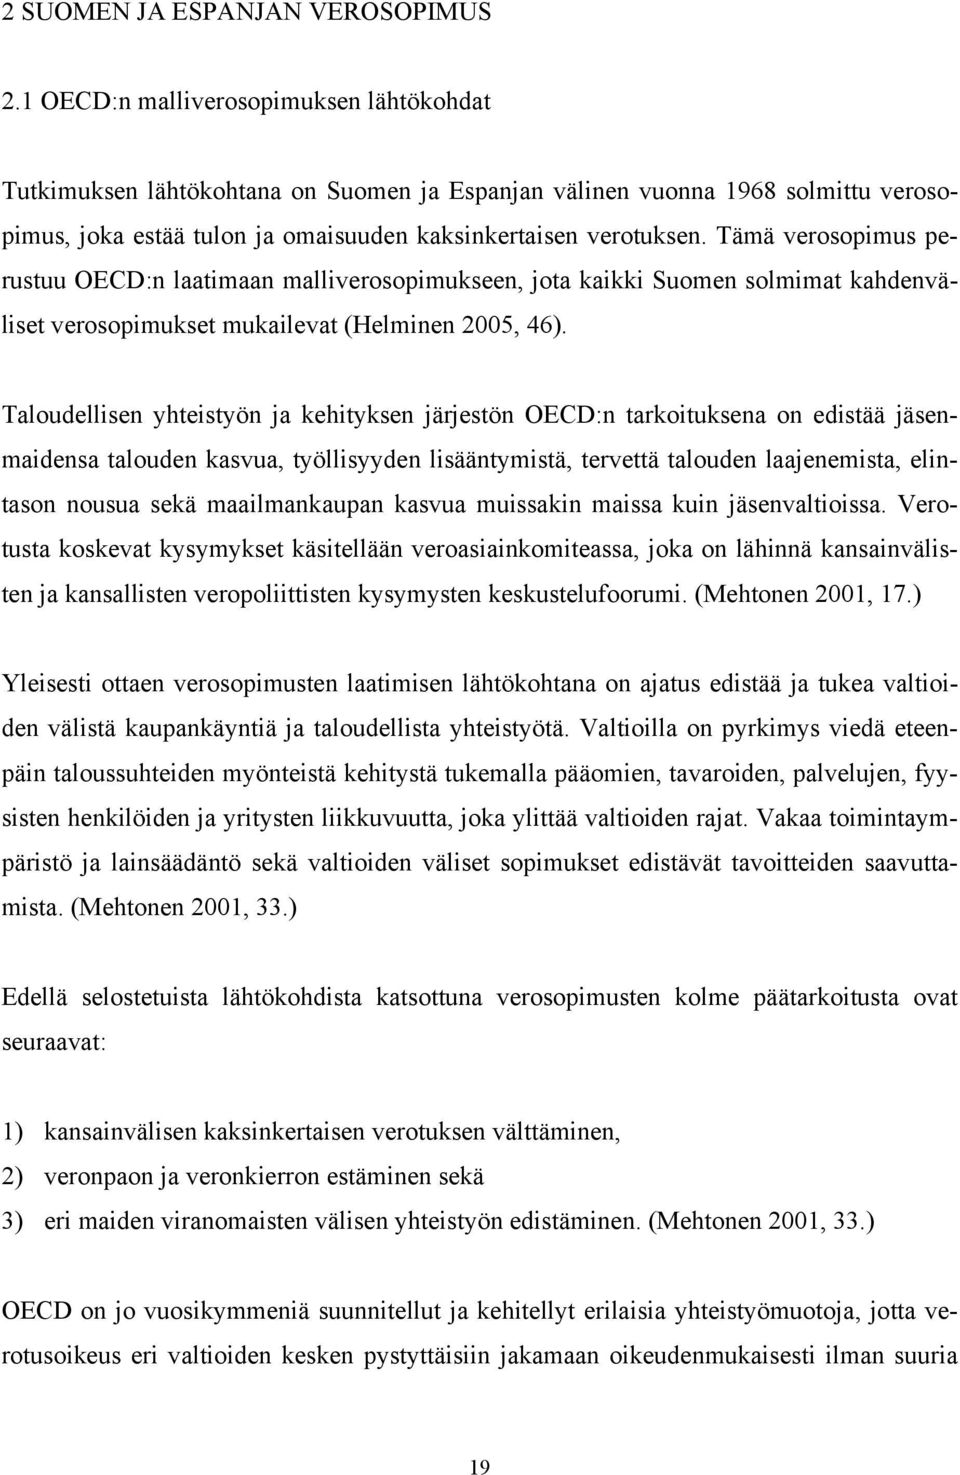 Tämä verosopimus perustuu OECD:n laatimaan malliverosopimukseen, jota kaikki Suomen solmimat kahdenväliset verosopimukset mukailevat (Helminen 2005, 46).